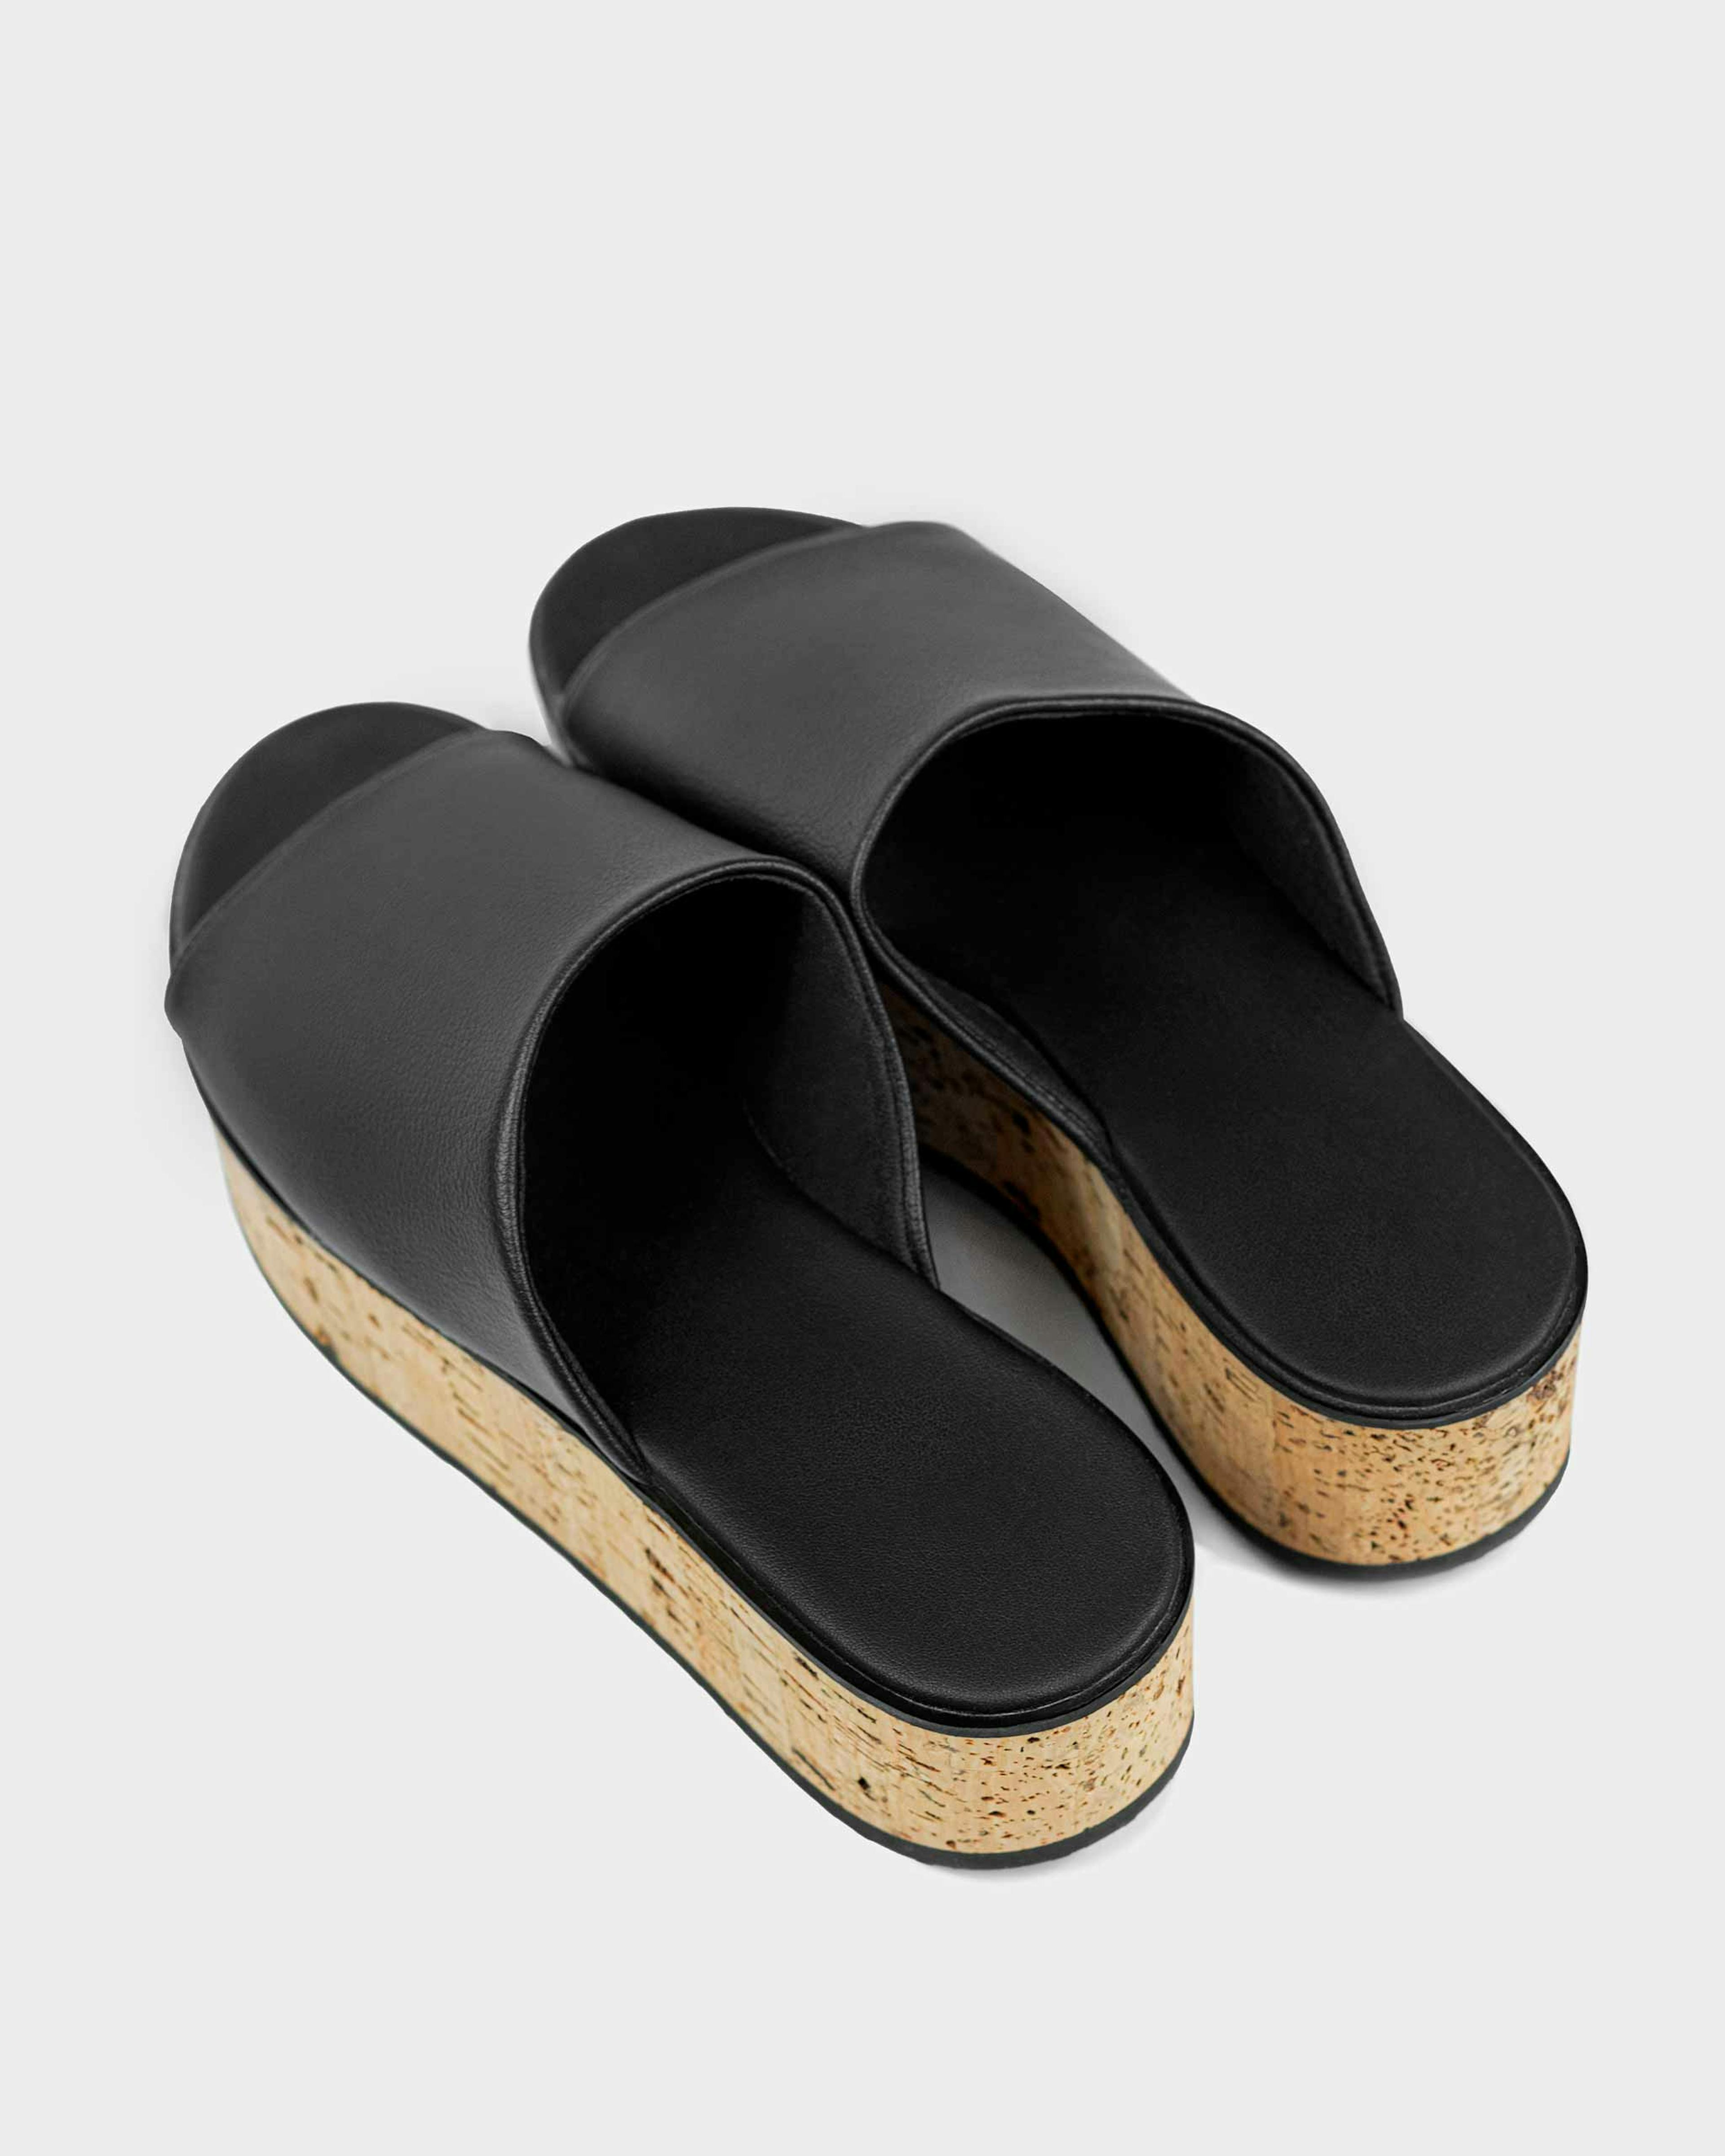 Geigi | Grape Vegan Leather Flatform Sandals | Black & Cork